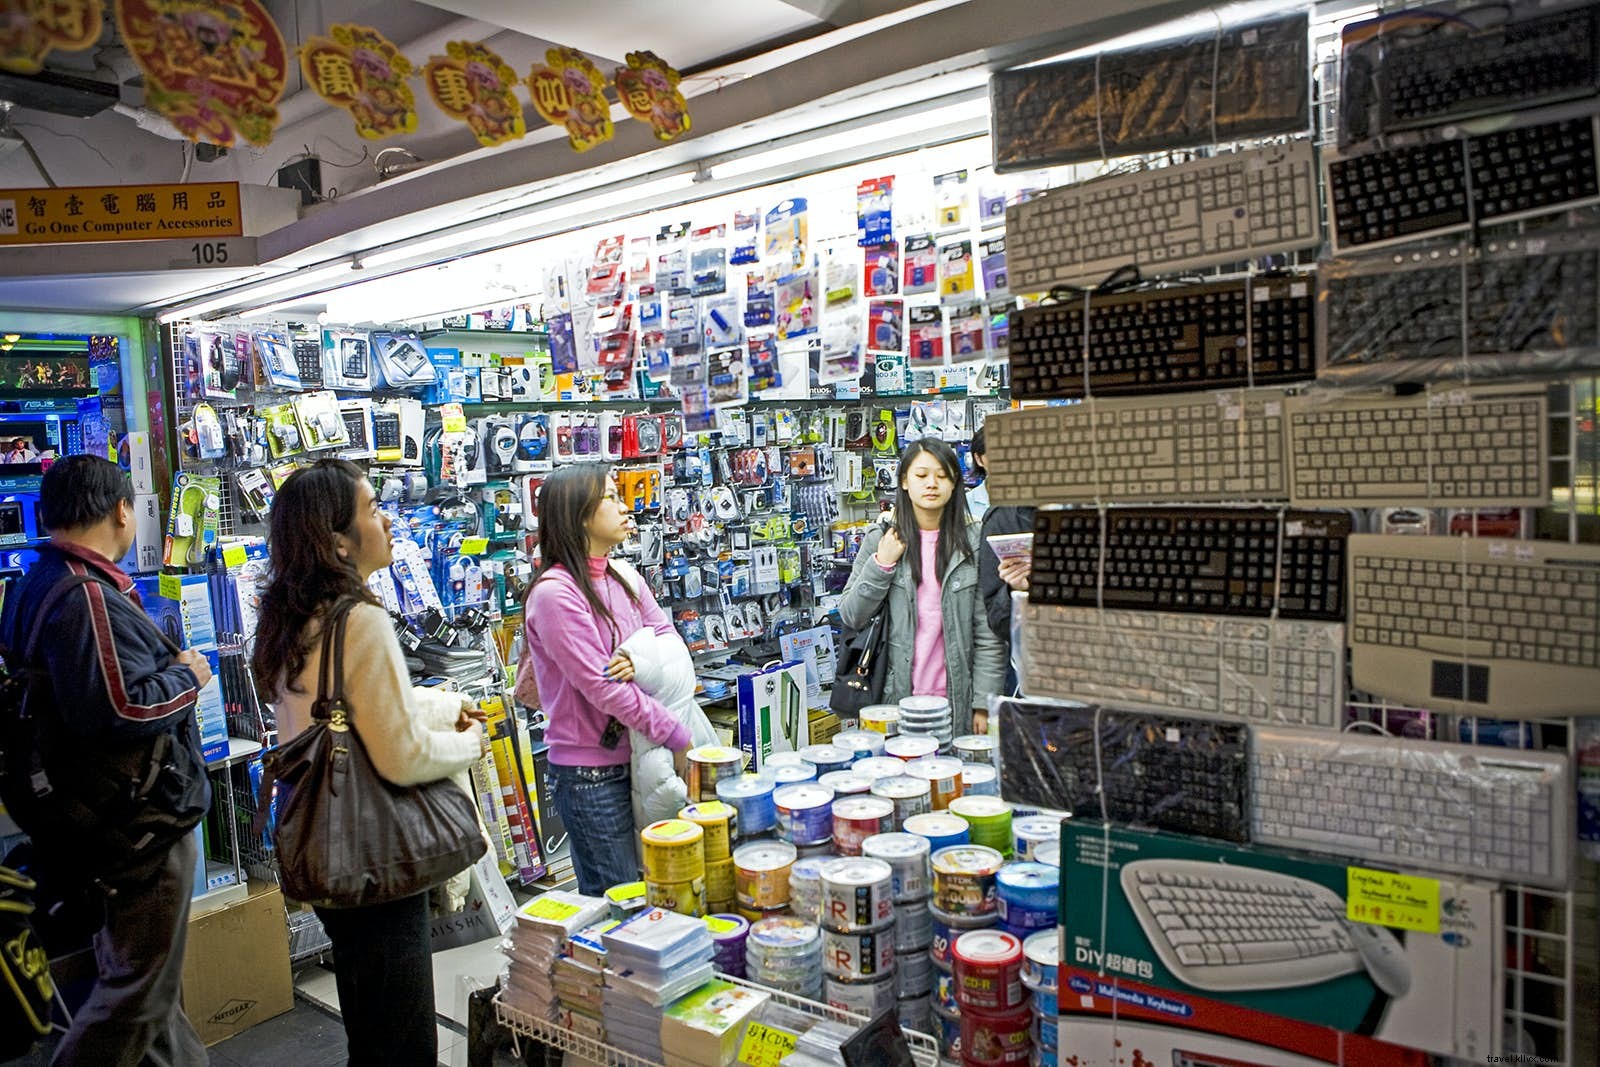 La guida definitiva allo shopping a Hong Kong 